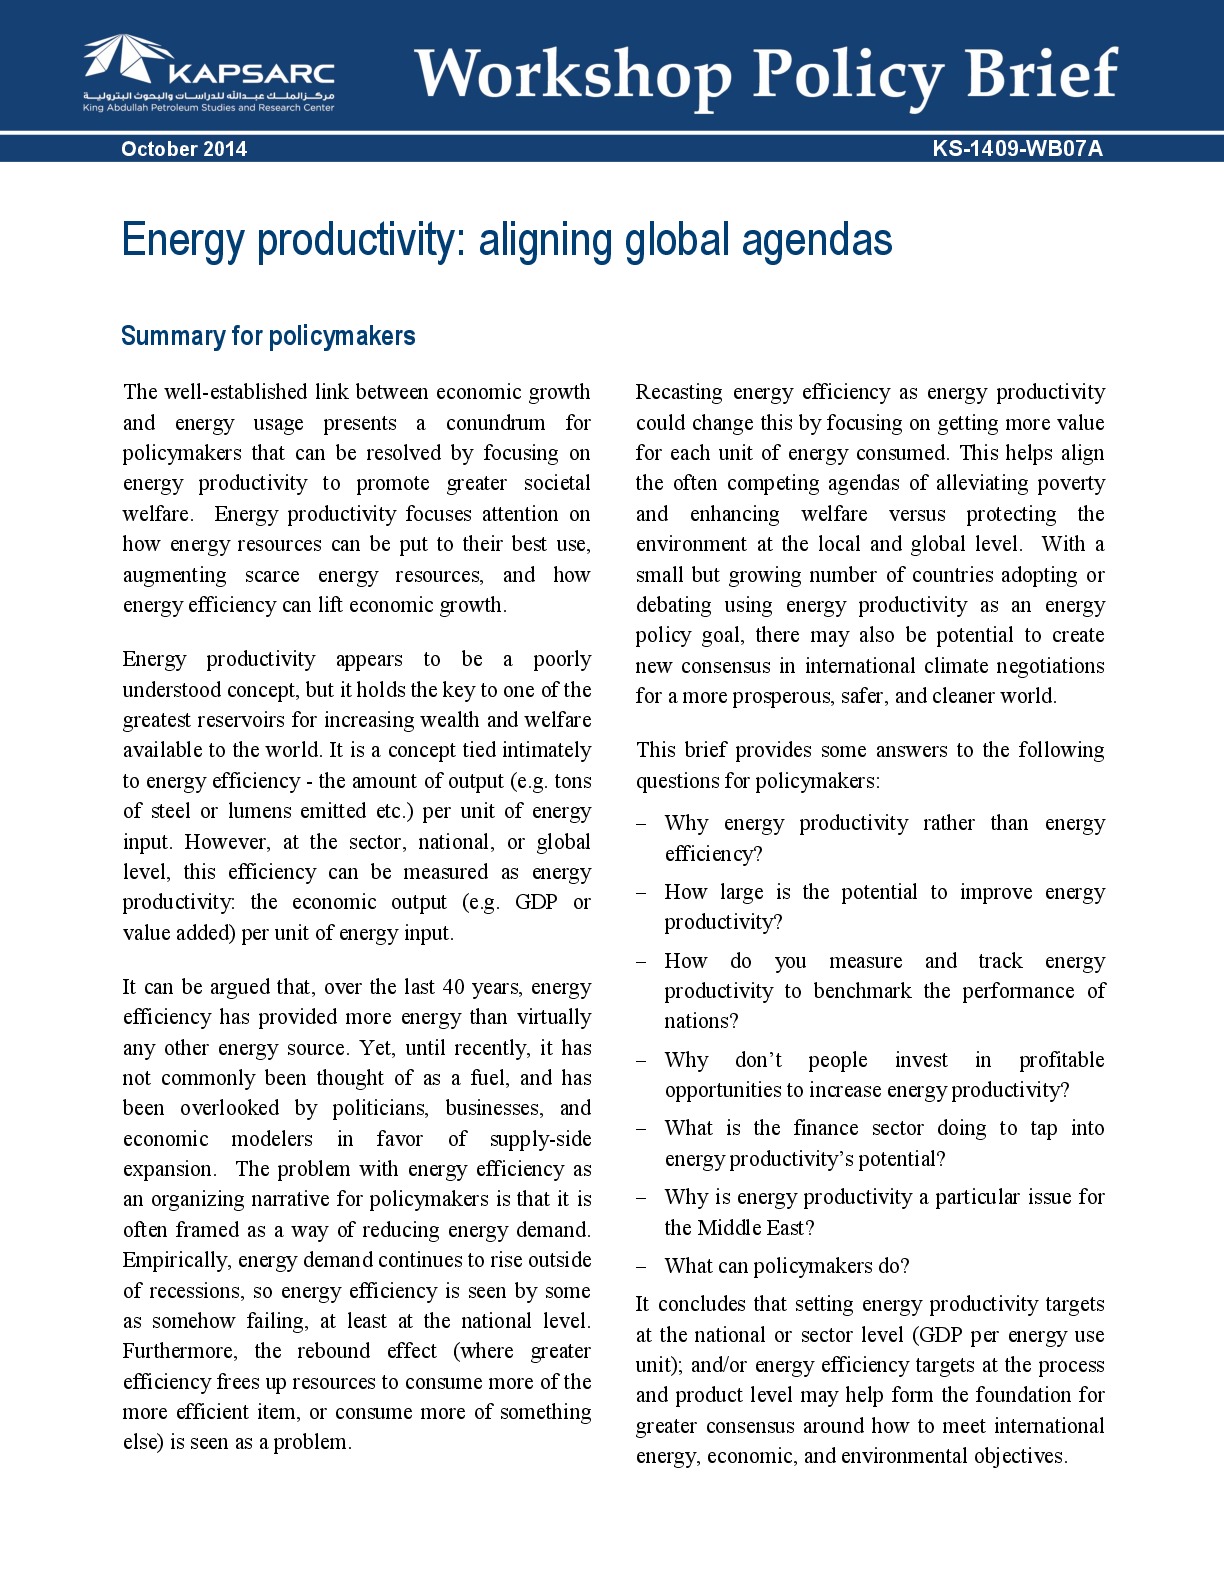 Energy productivity: aligning global agendas